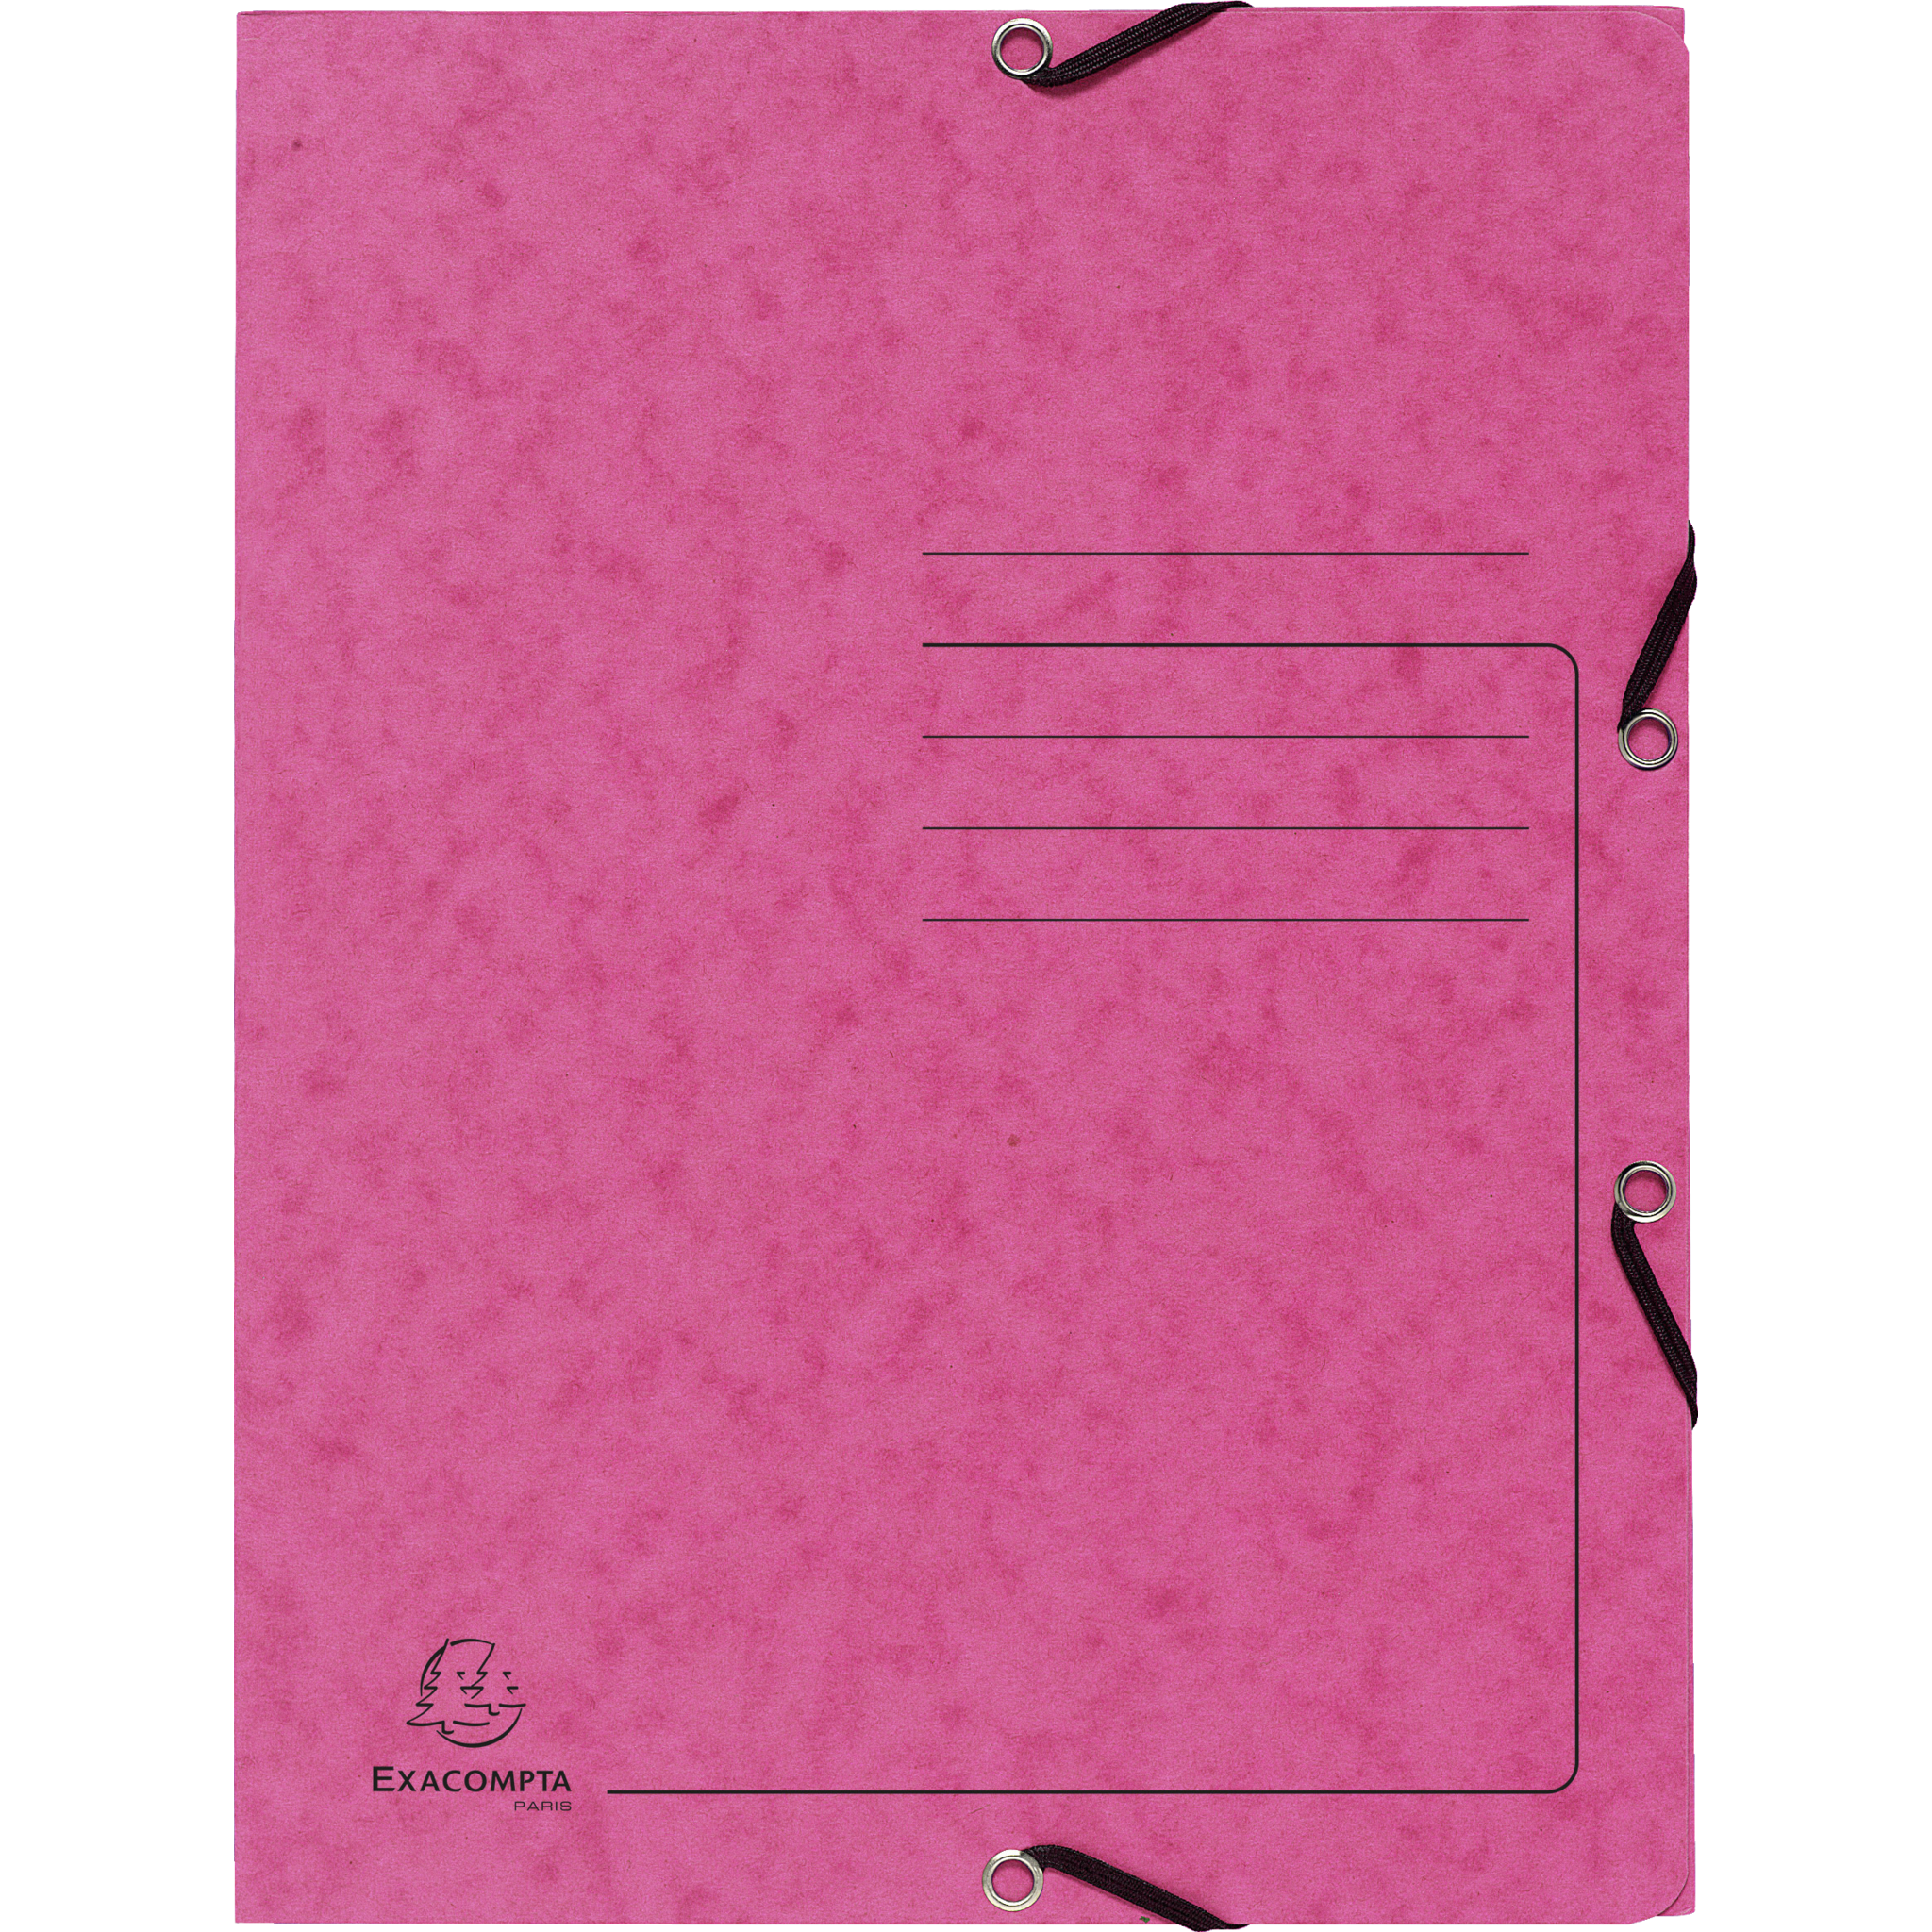 EXACOMPTA Sammelmappe mit Gummizug und 3 Klappen aus Colorspan-Karton 355g/m2 - A4 - Pink